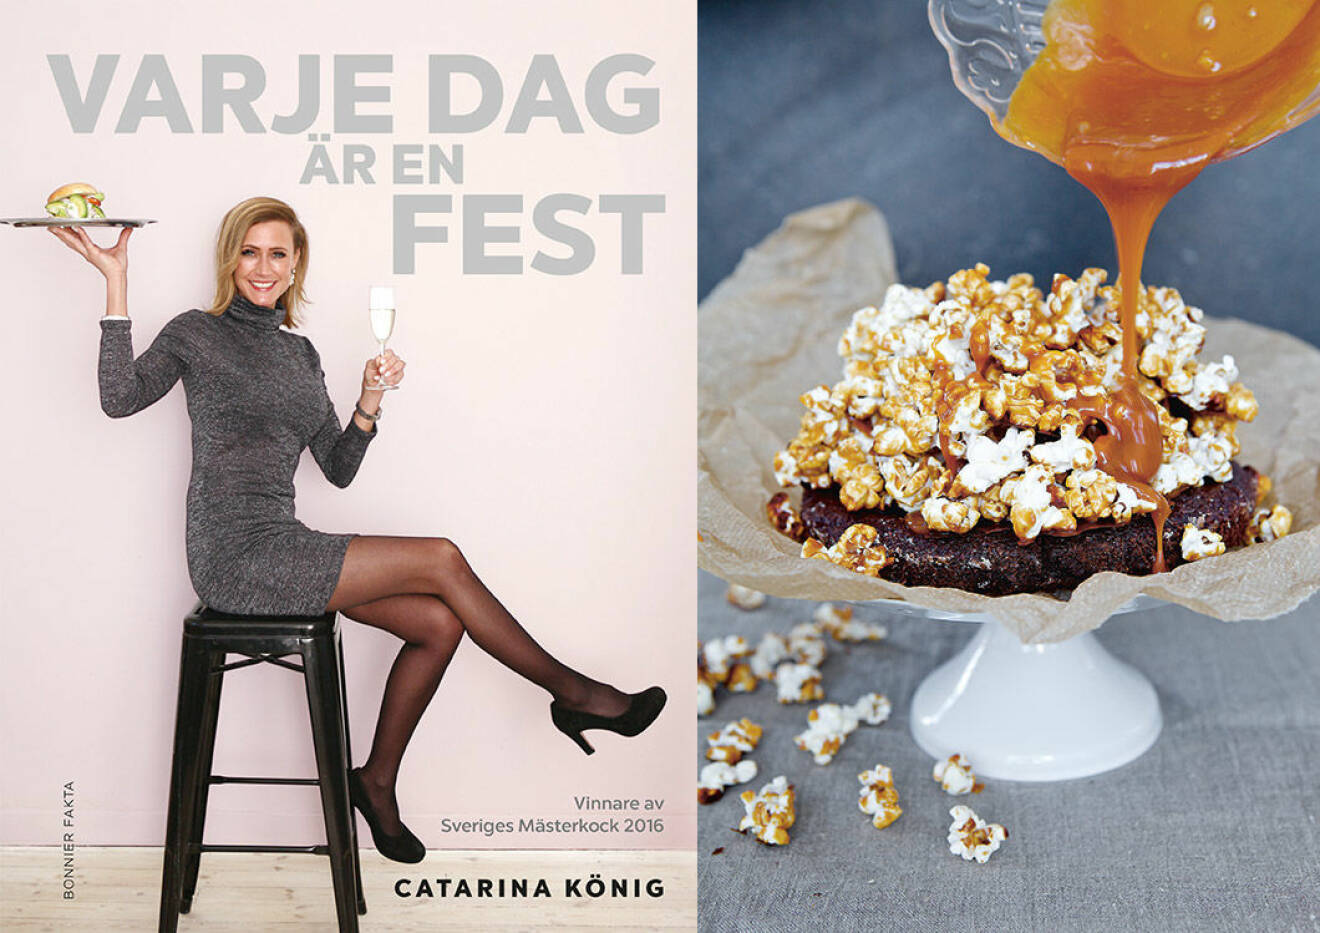 Chokladtryffeltårta med salta kolapopcorn från Catarina Königs kokbok "Varje dag är en fest".